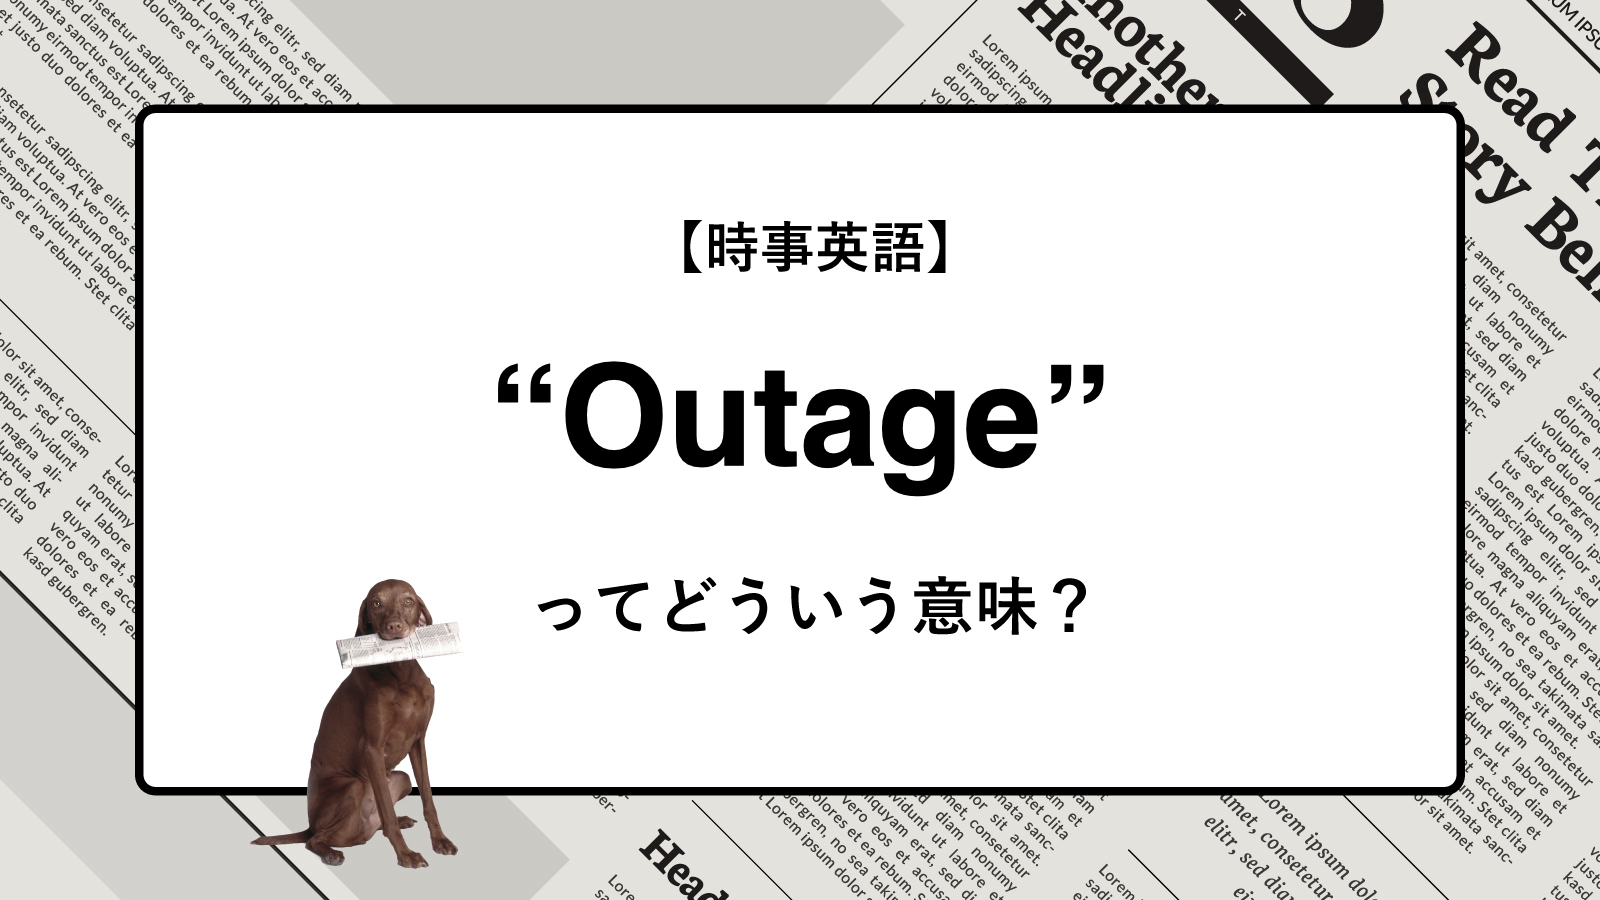 【時事英語】“Outage” ってどういう意味？ | ニュースの「キーワード」で語彙力を身につける